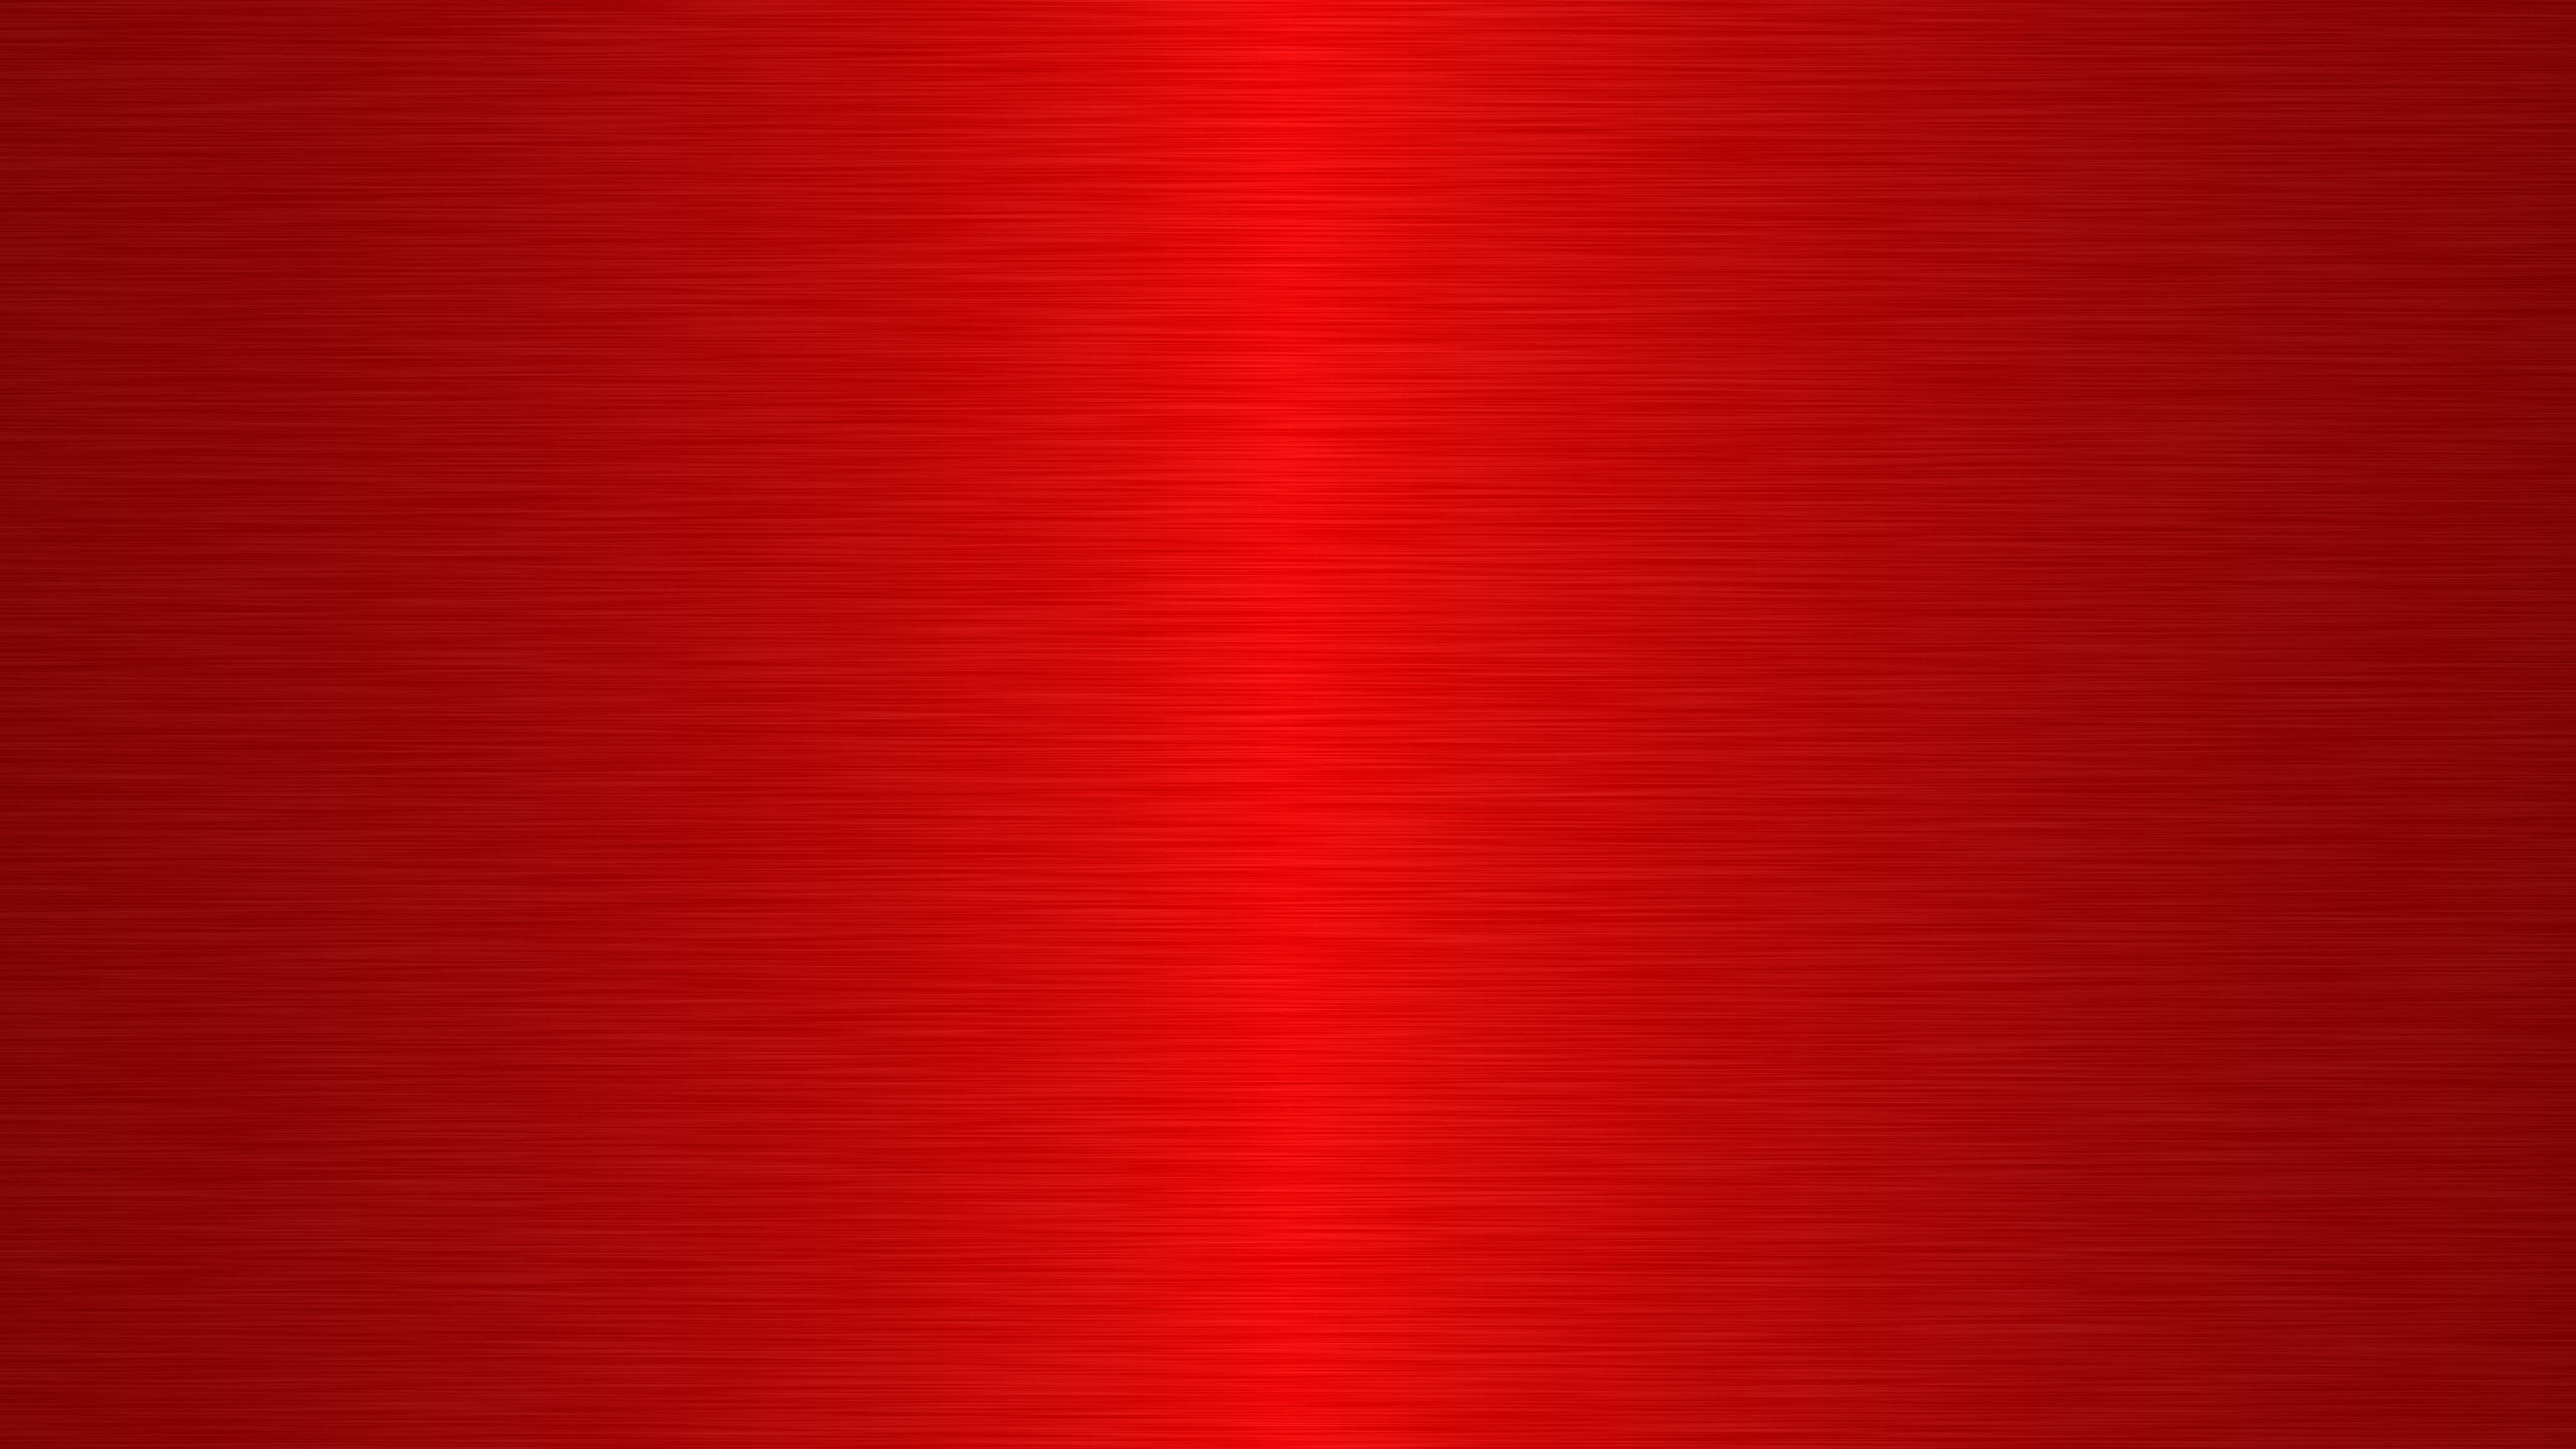 Hình Nền đỏ đơn Giản Hd Top Những Hình Ảnh Đẹp